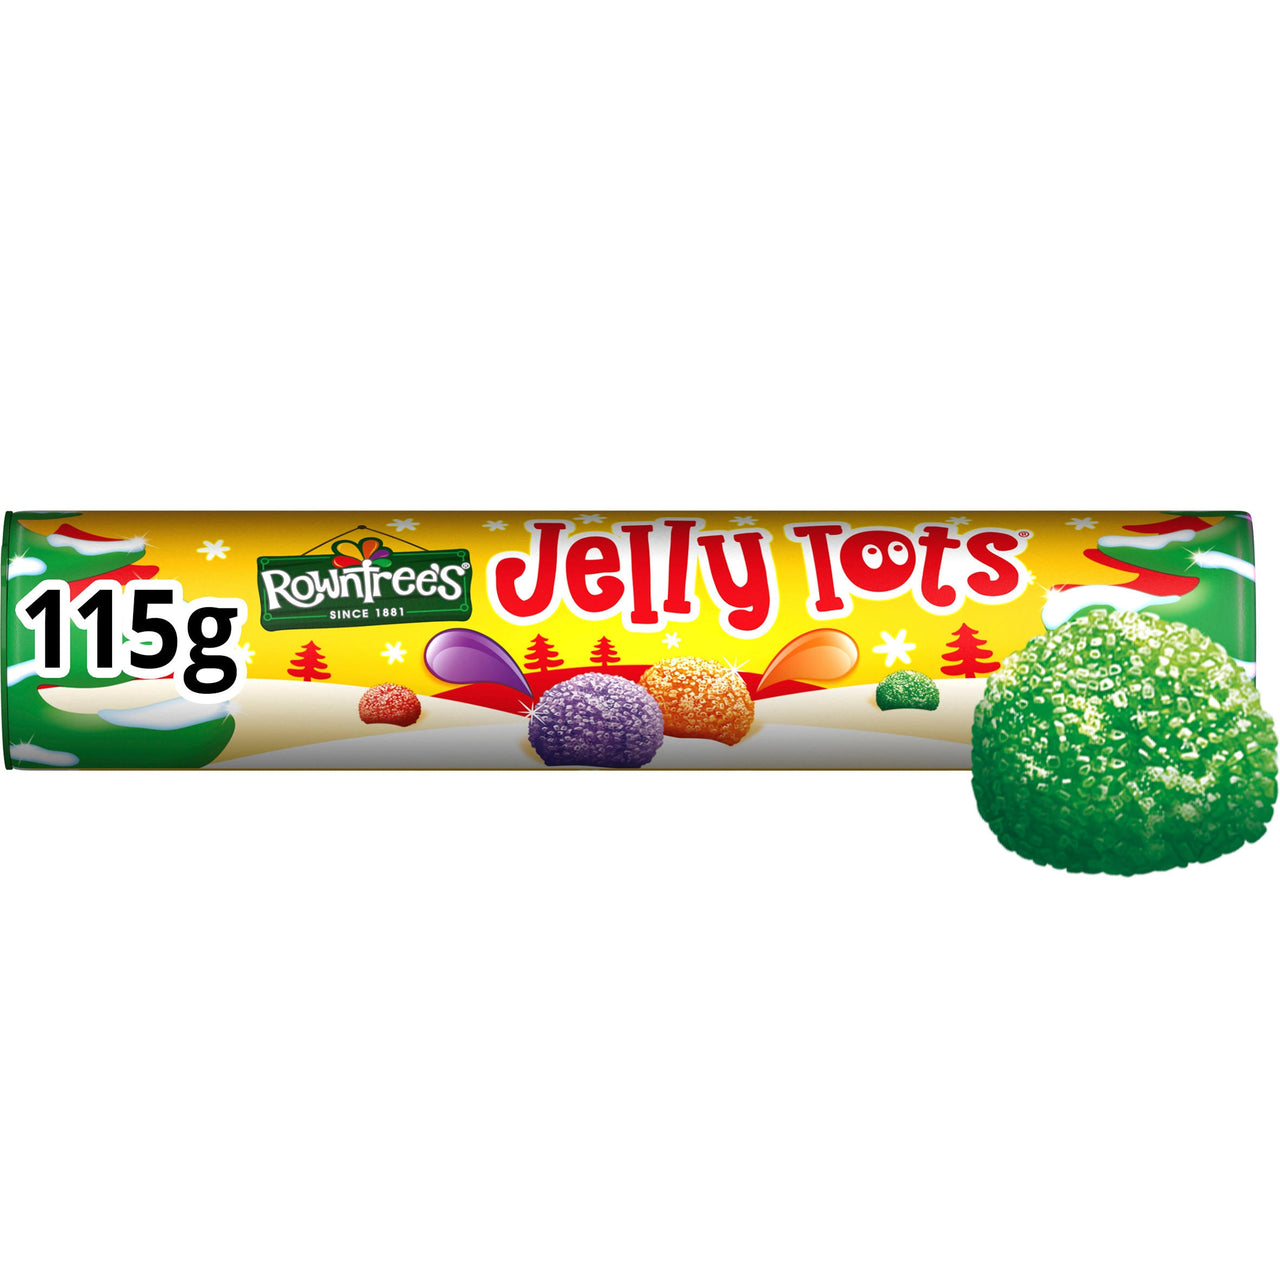 Jelly tots tube 115g